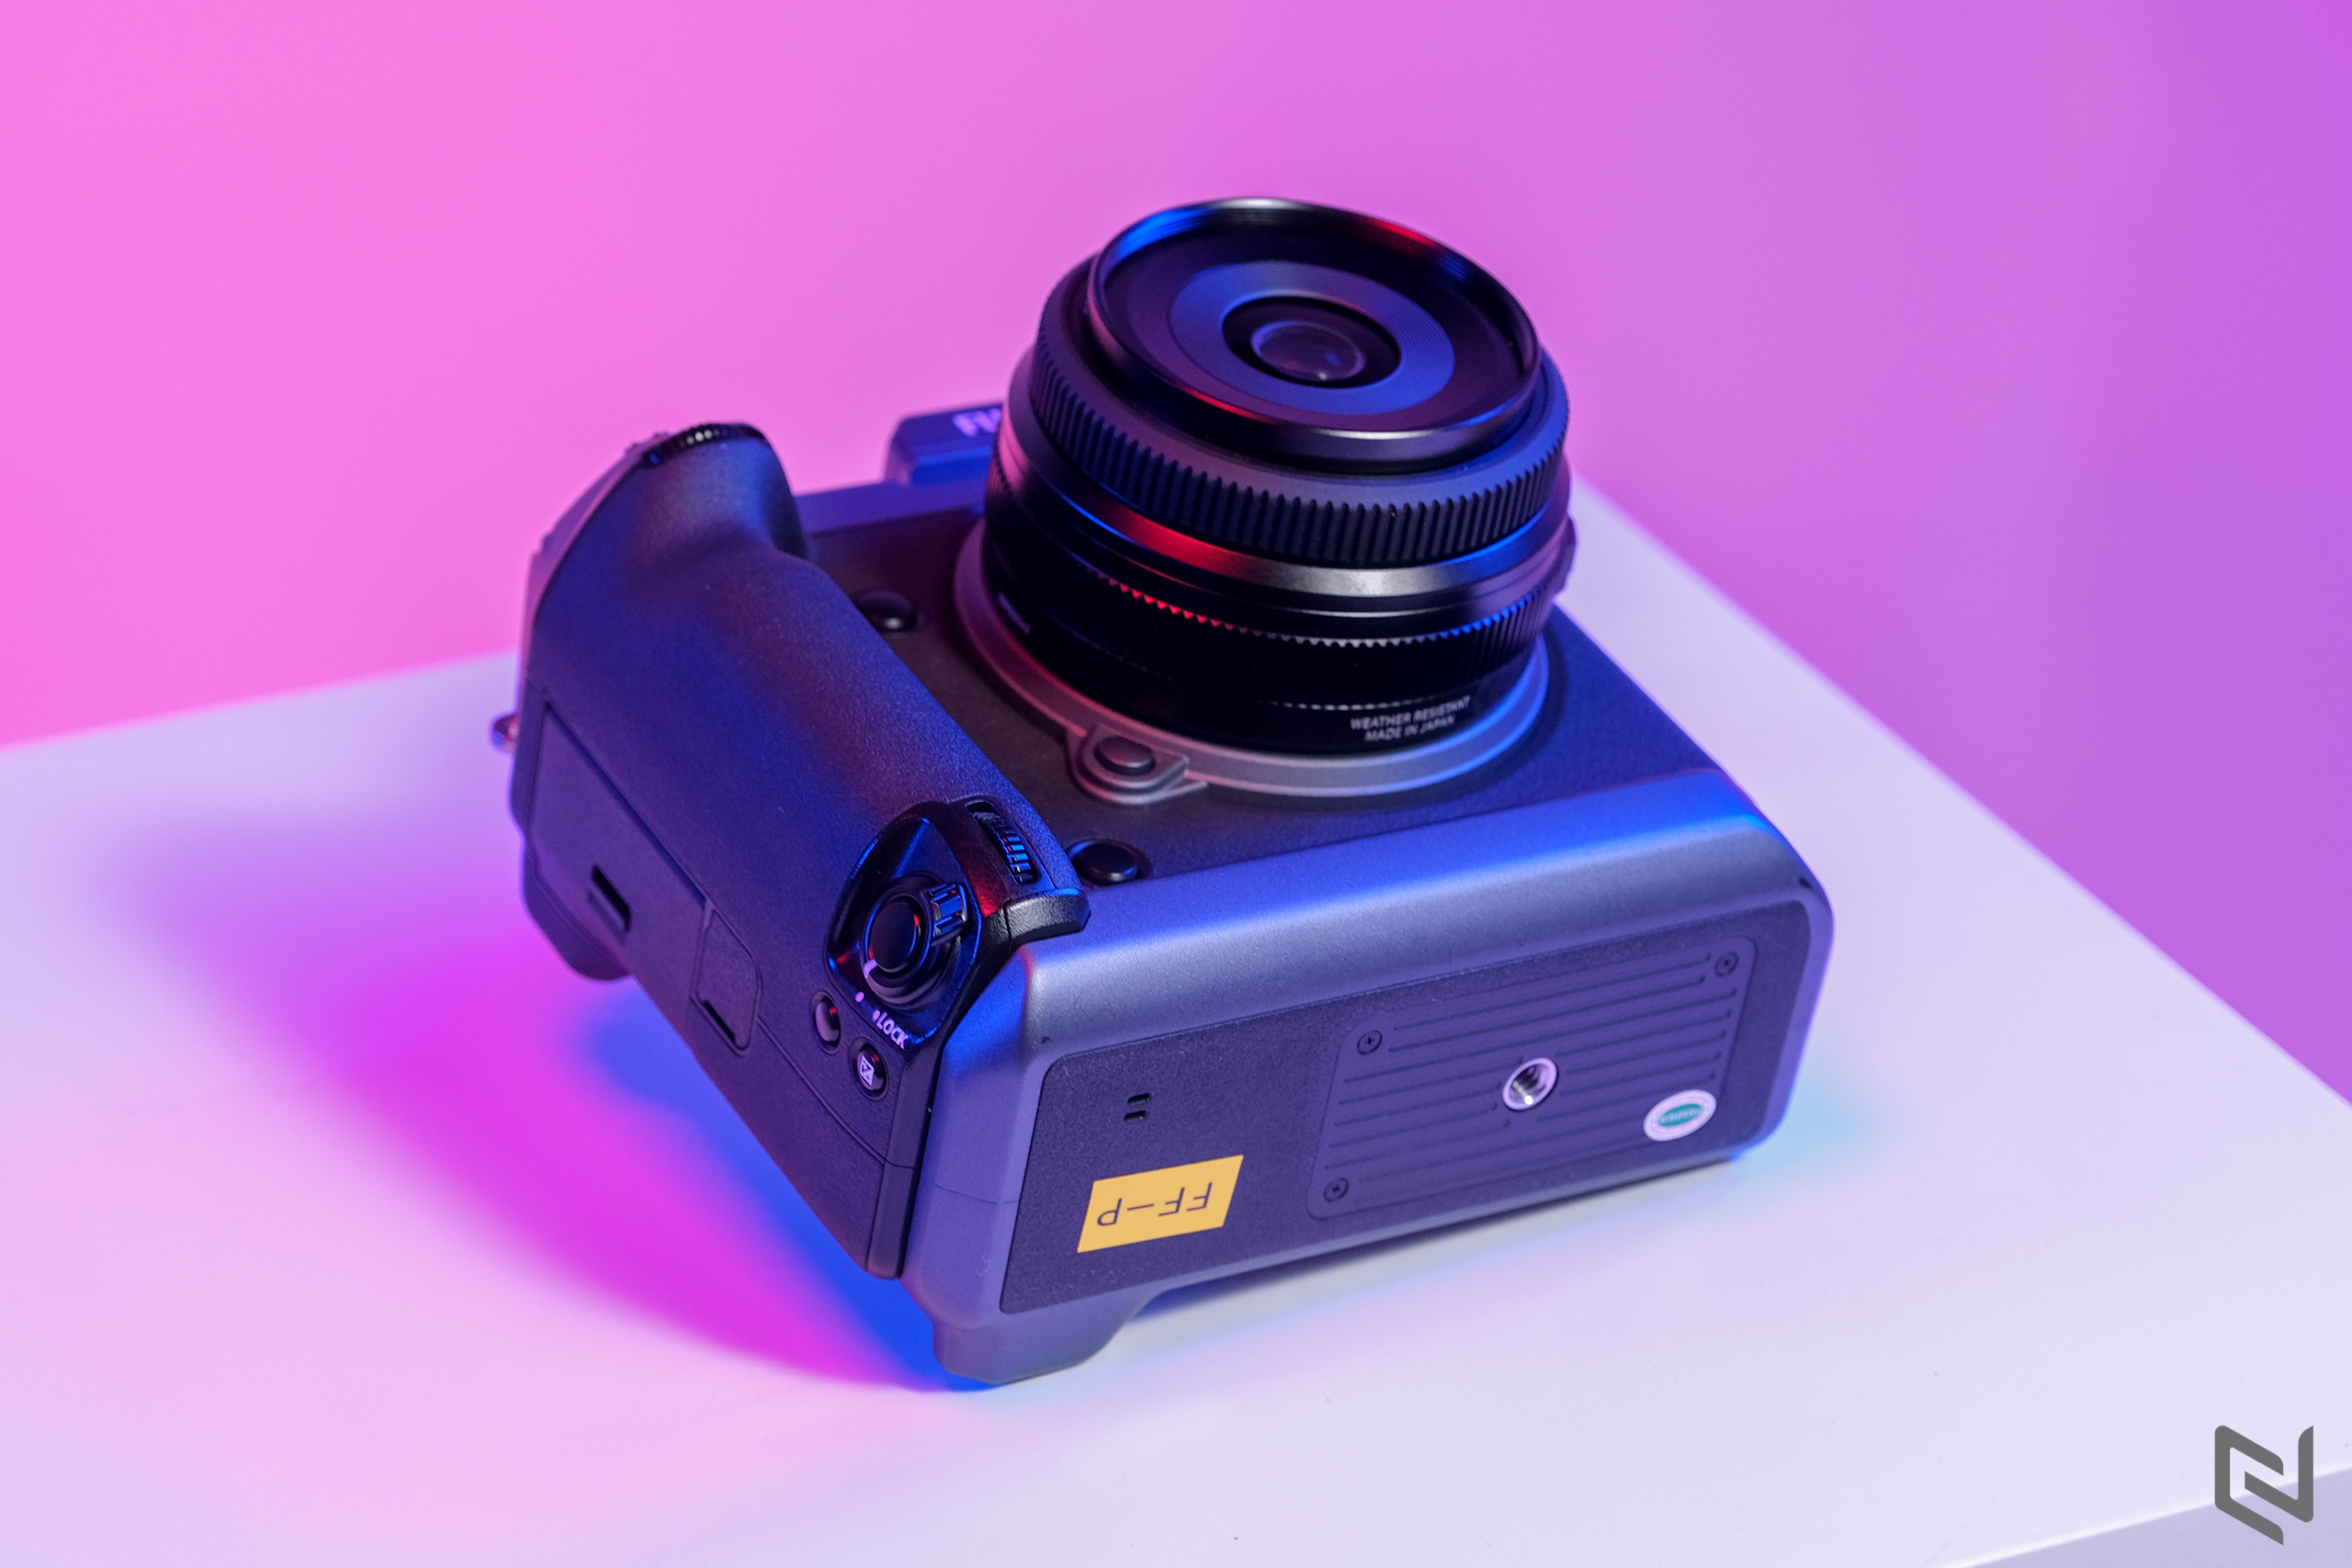 Ra mắt máy ảnh Fujifilm GFX100 tại Việt Nam: siêu phẩm Mirrorless cảm biến Medium Format 102MP, giá 255 triệu